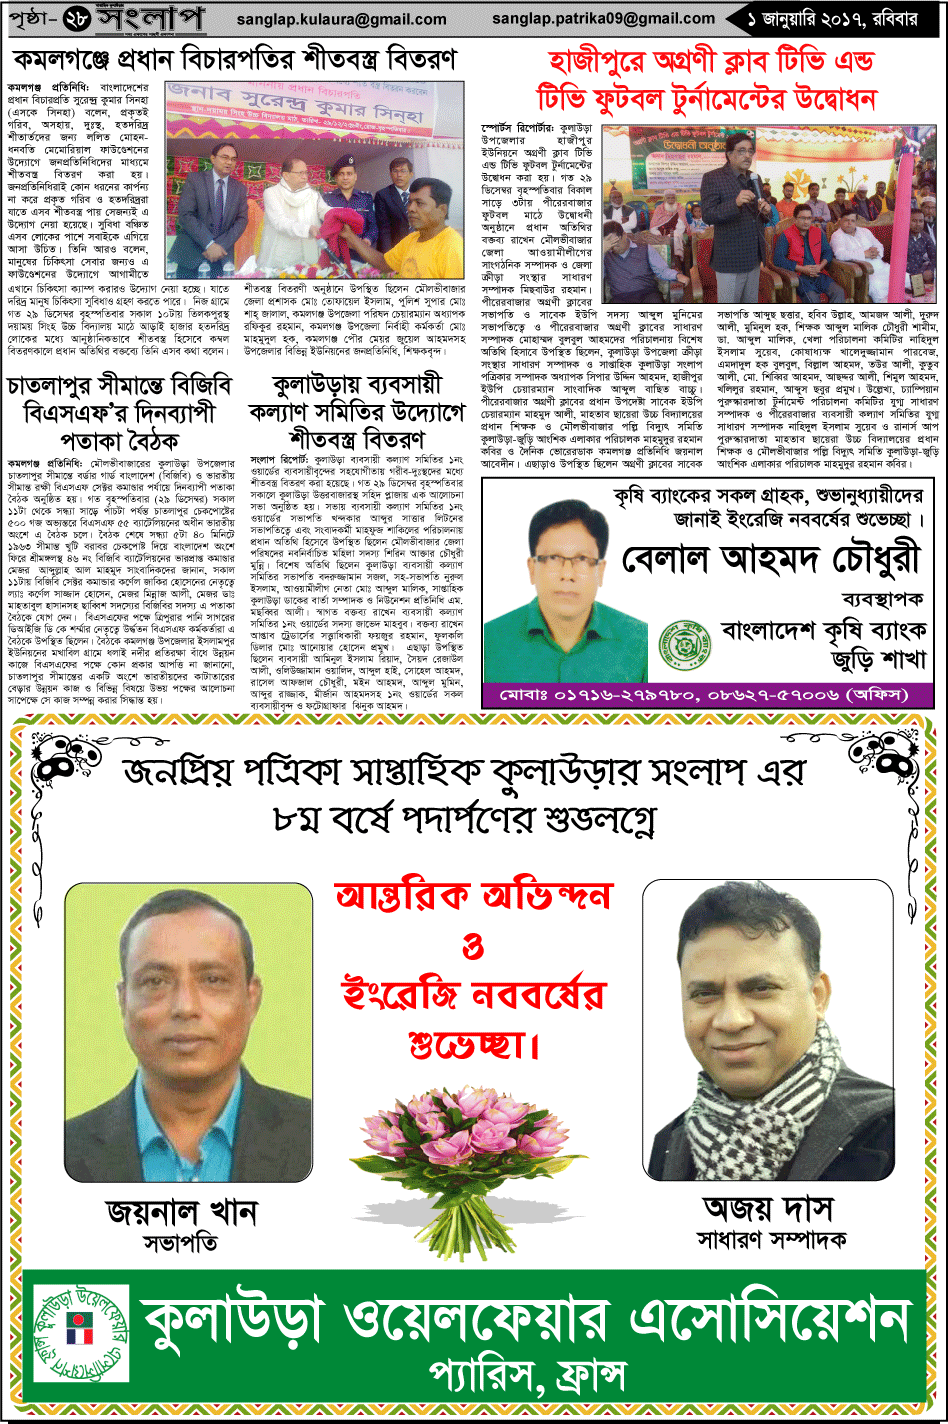 Weekly Kulaurer Sanglap Regi - Newspaper (948x1424)